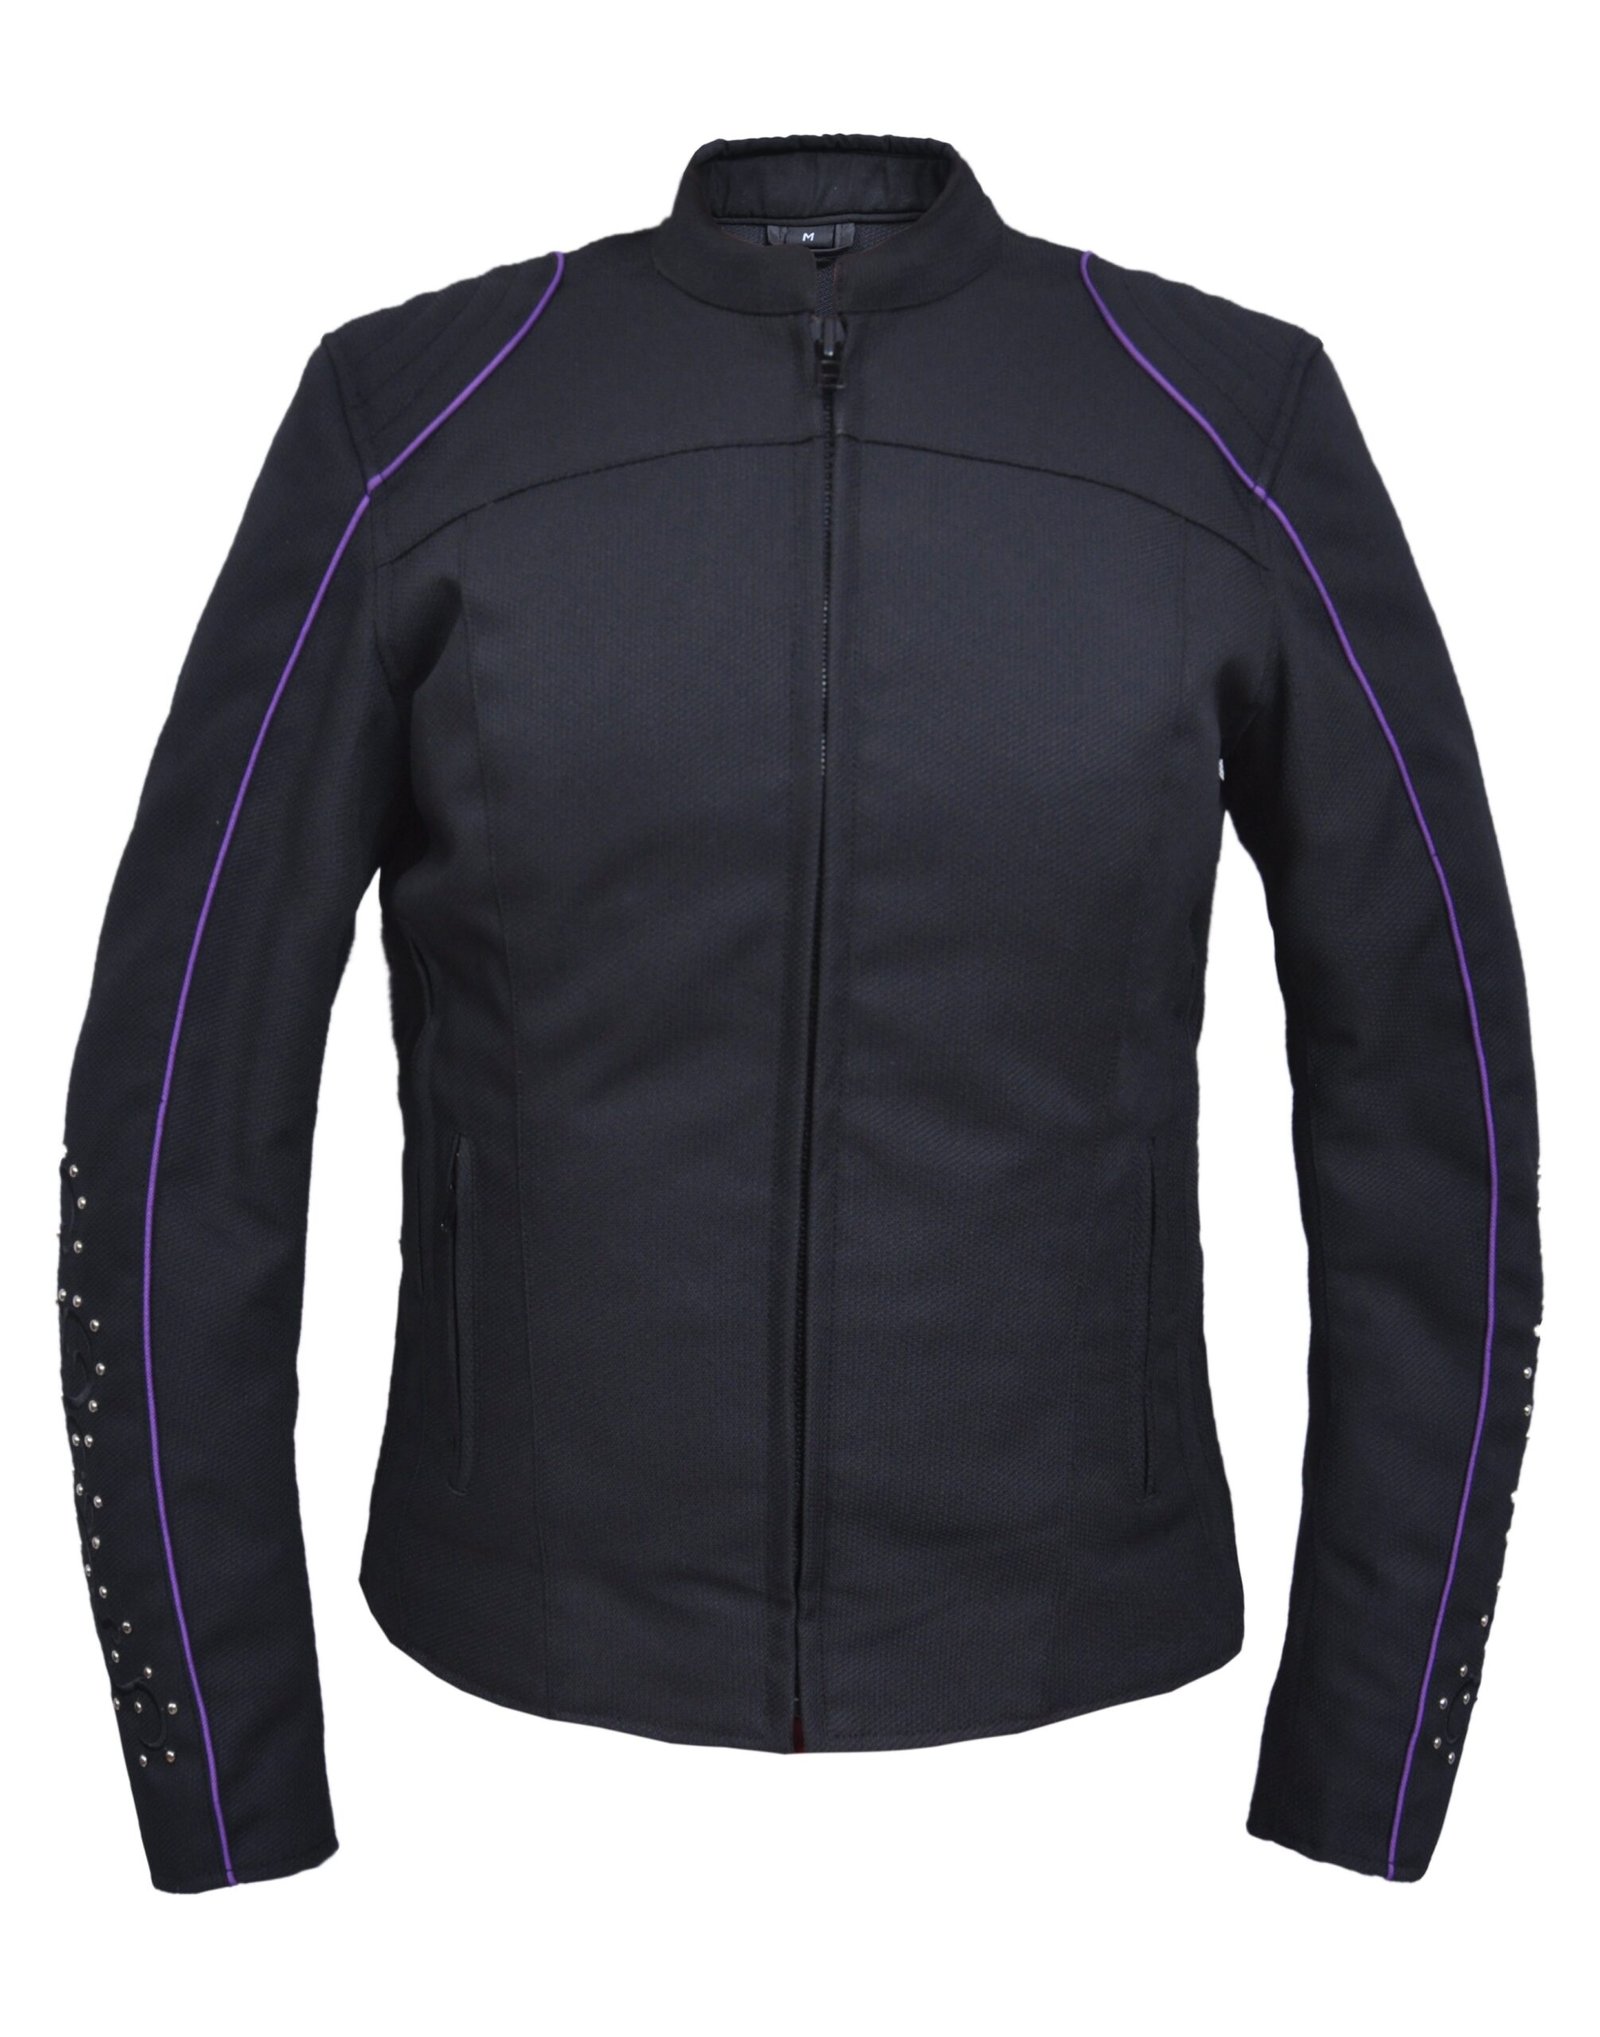 UNIK Ladies Nylon Textile Jacket With Purple Wings - 3692-17-UN